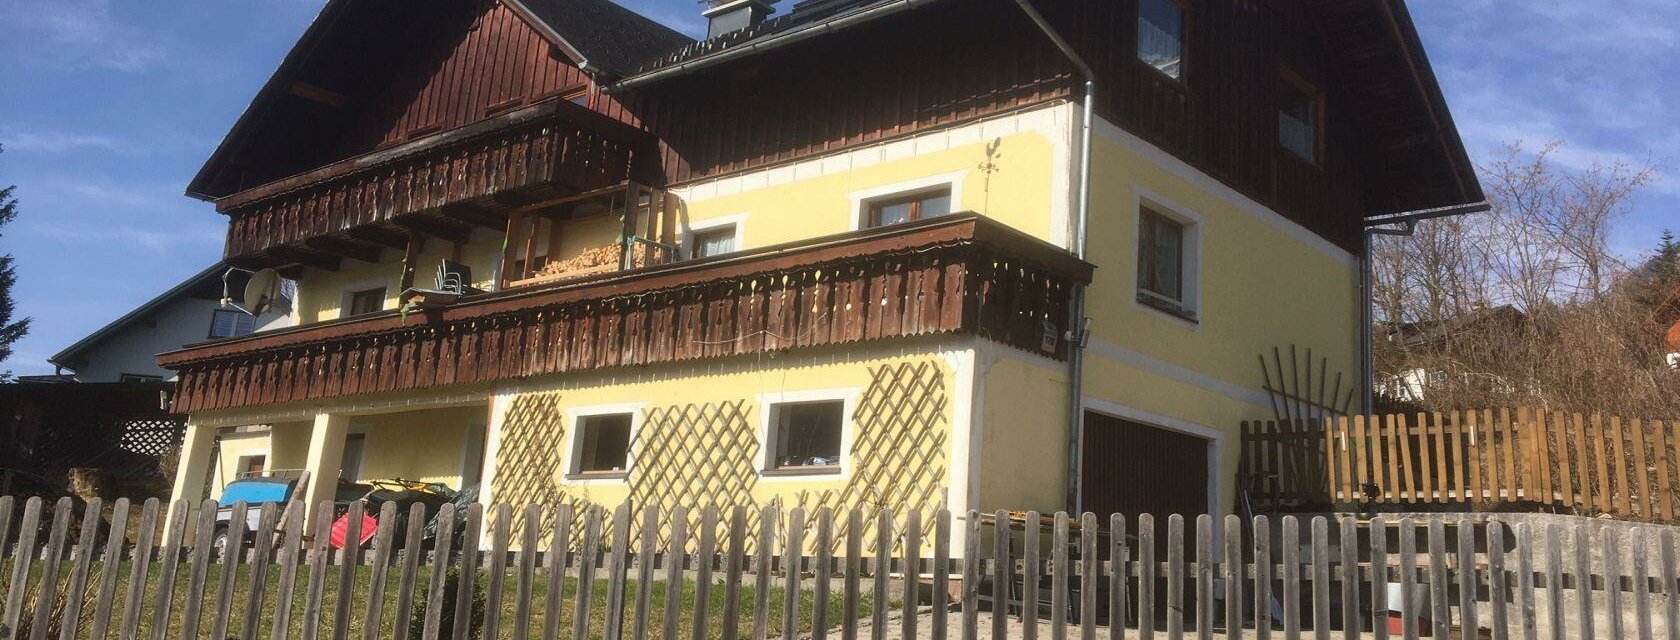 Haus Scheck, Grundlsee, mit Balkon und Terrasse